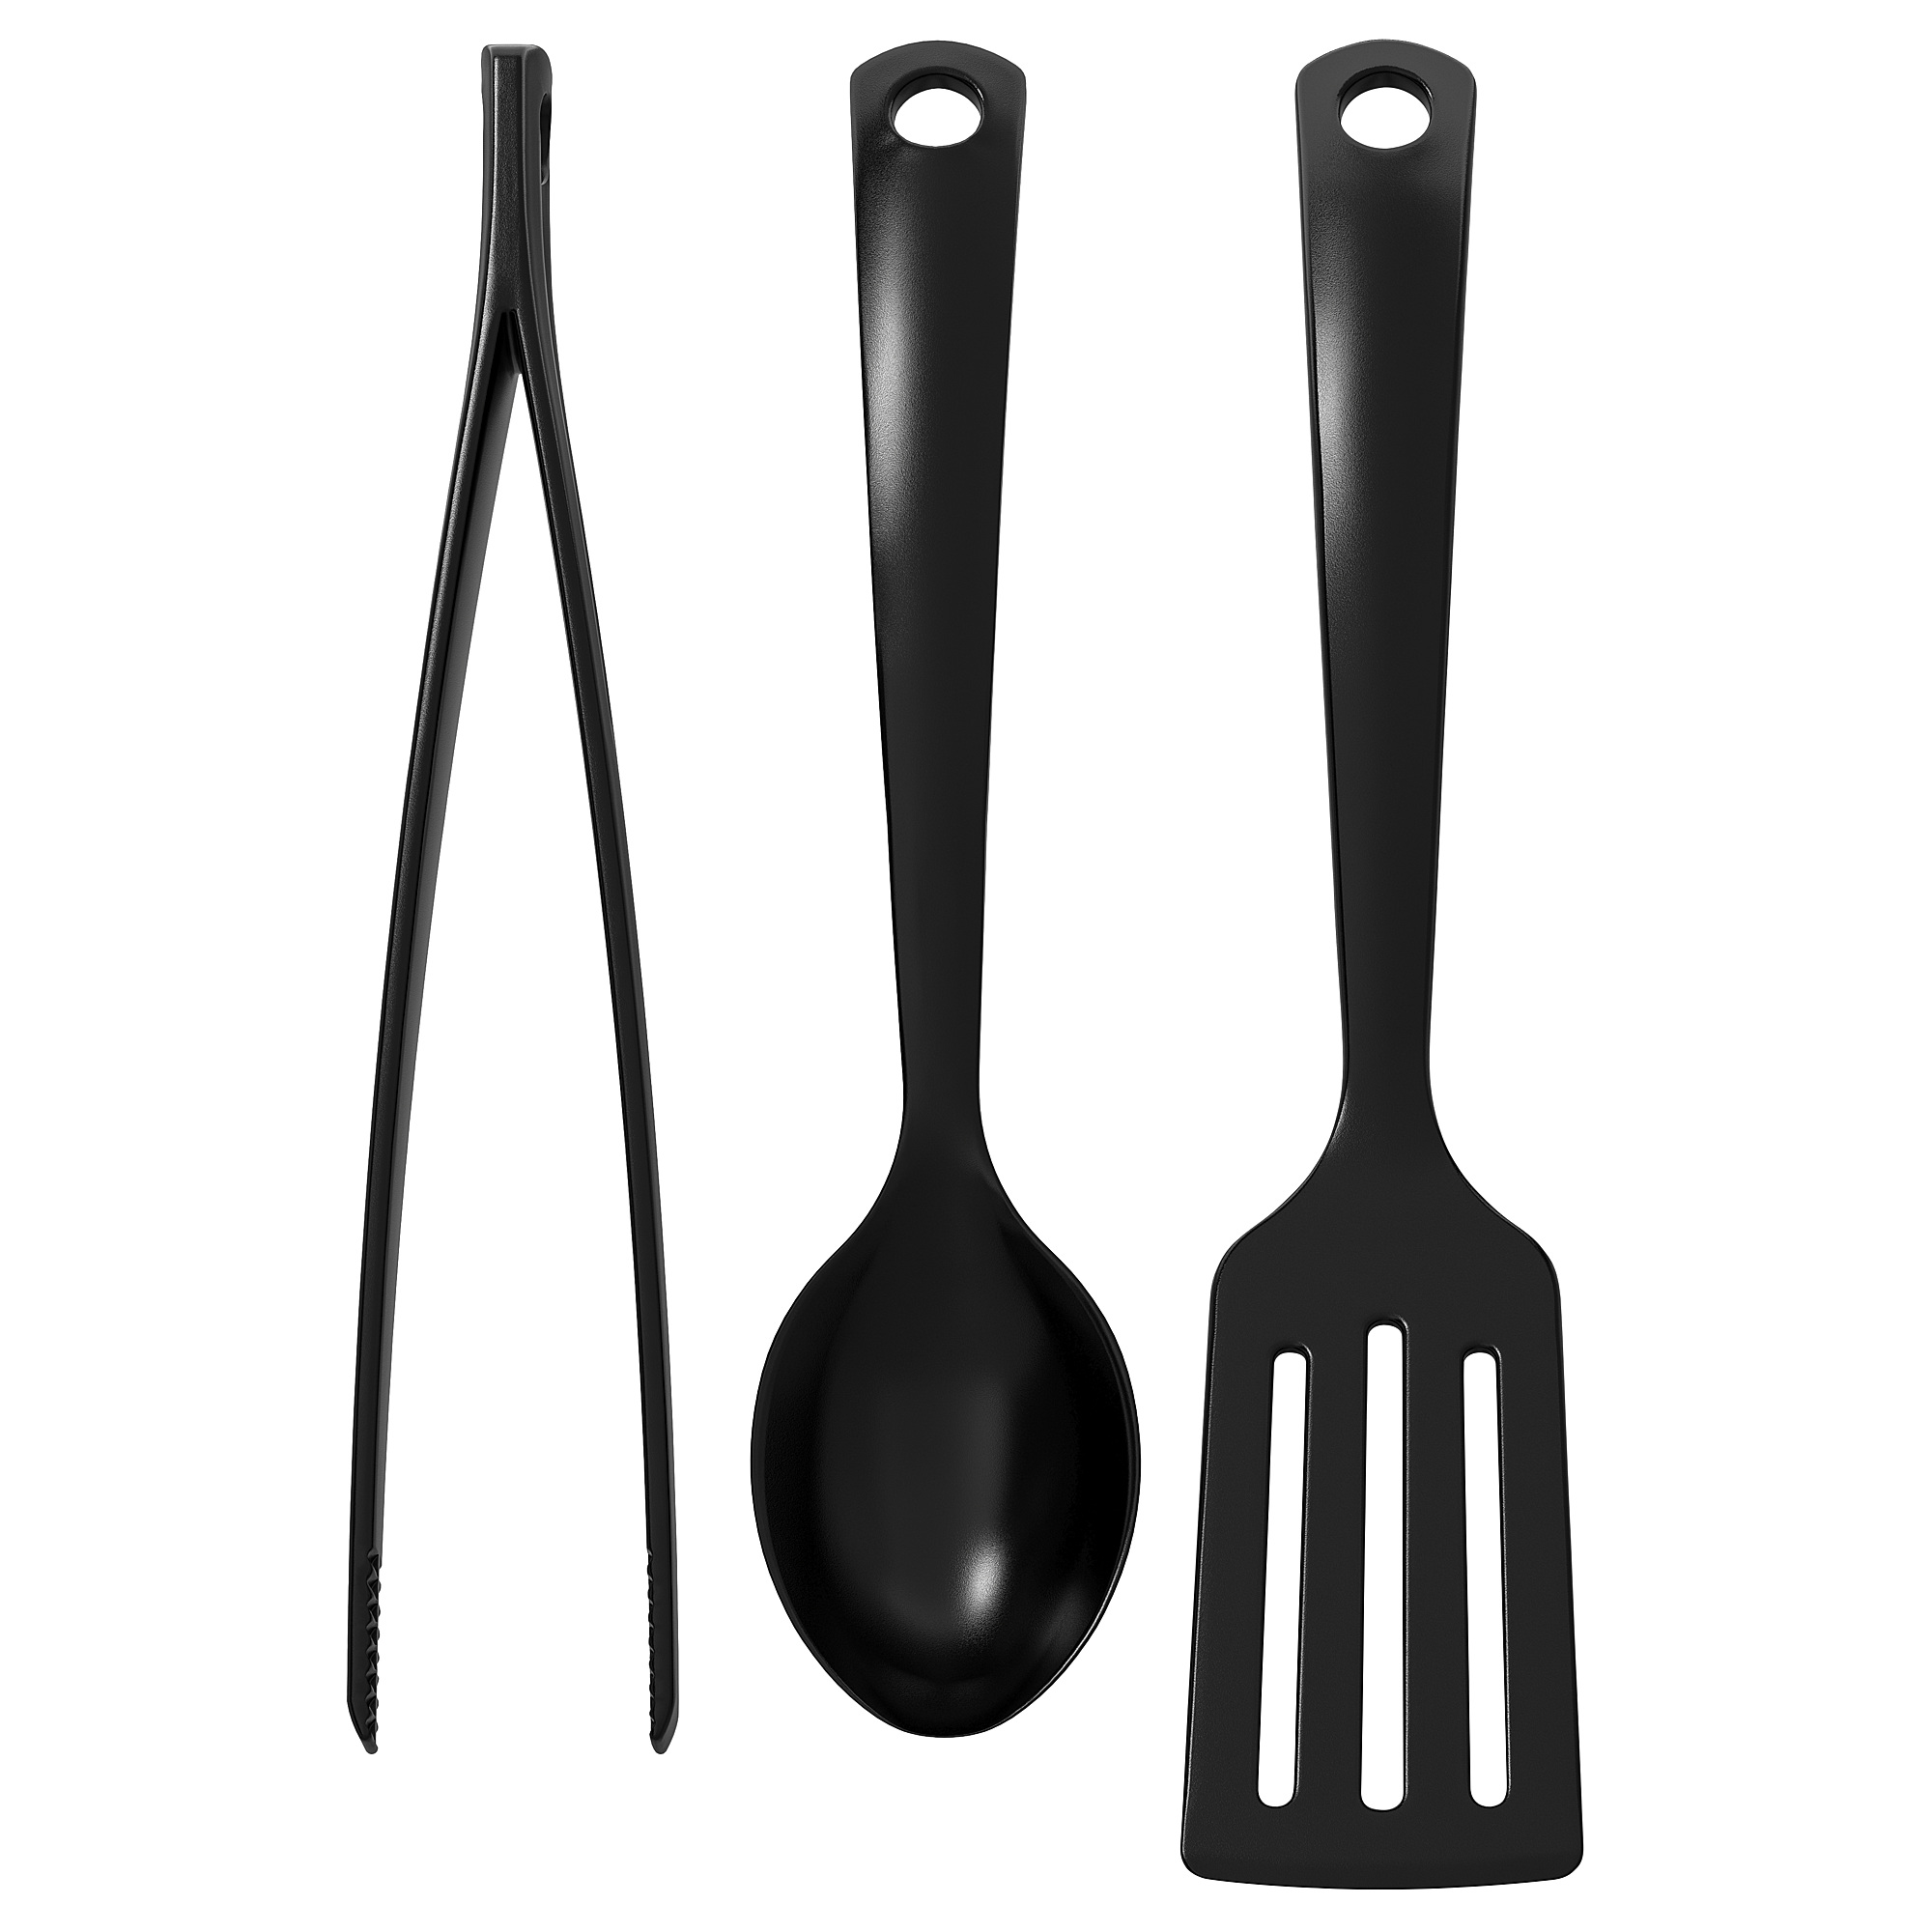 GNARP 3-piece kitchen utensil set